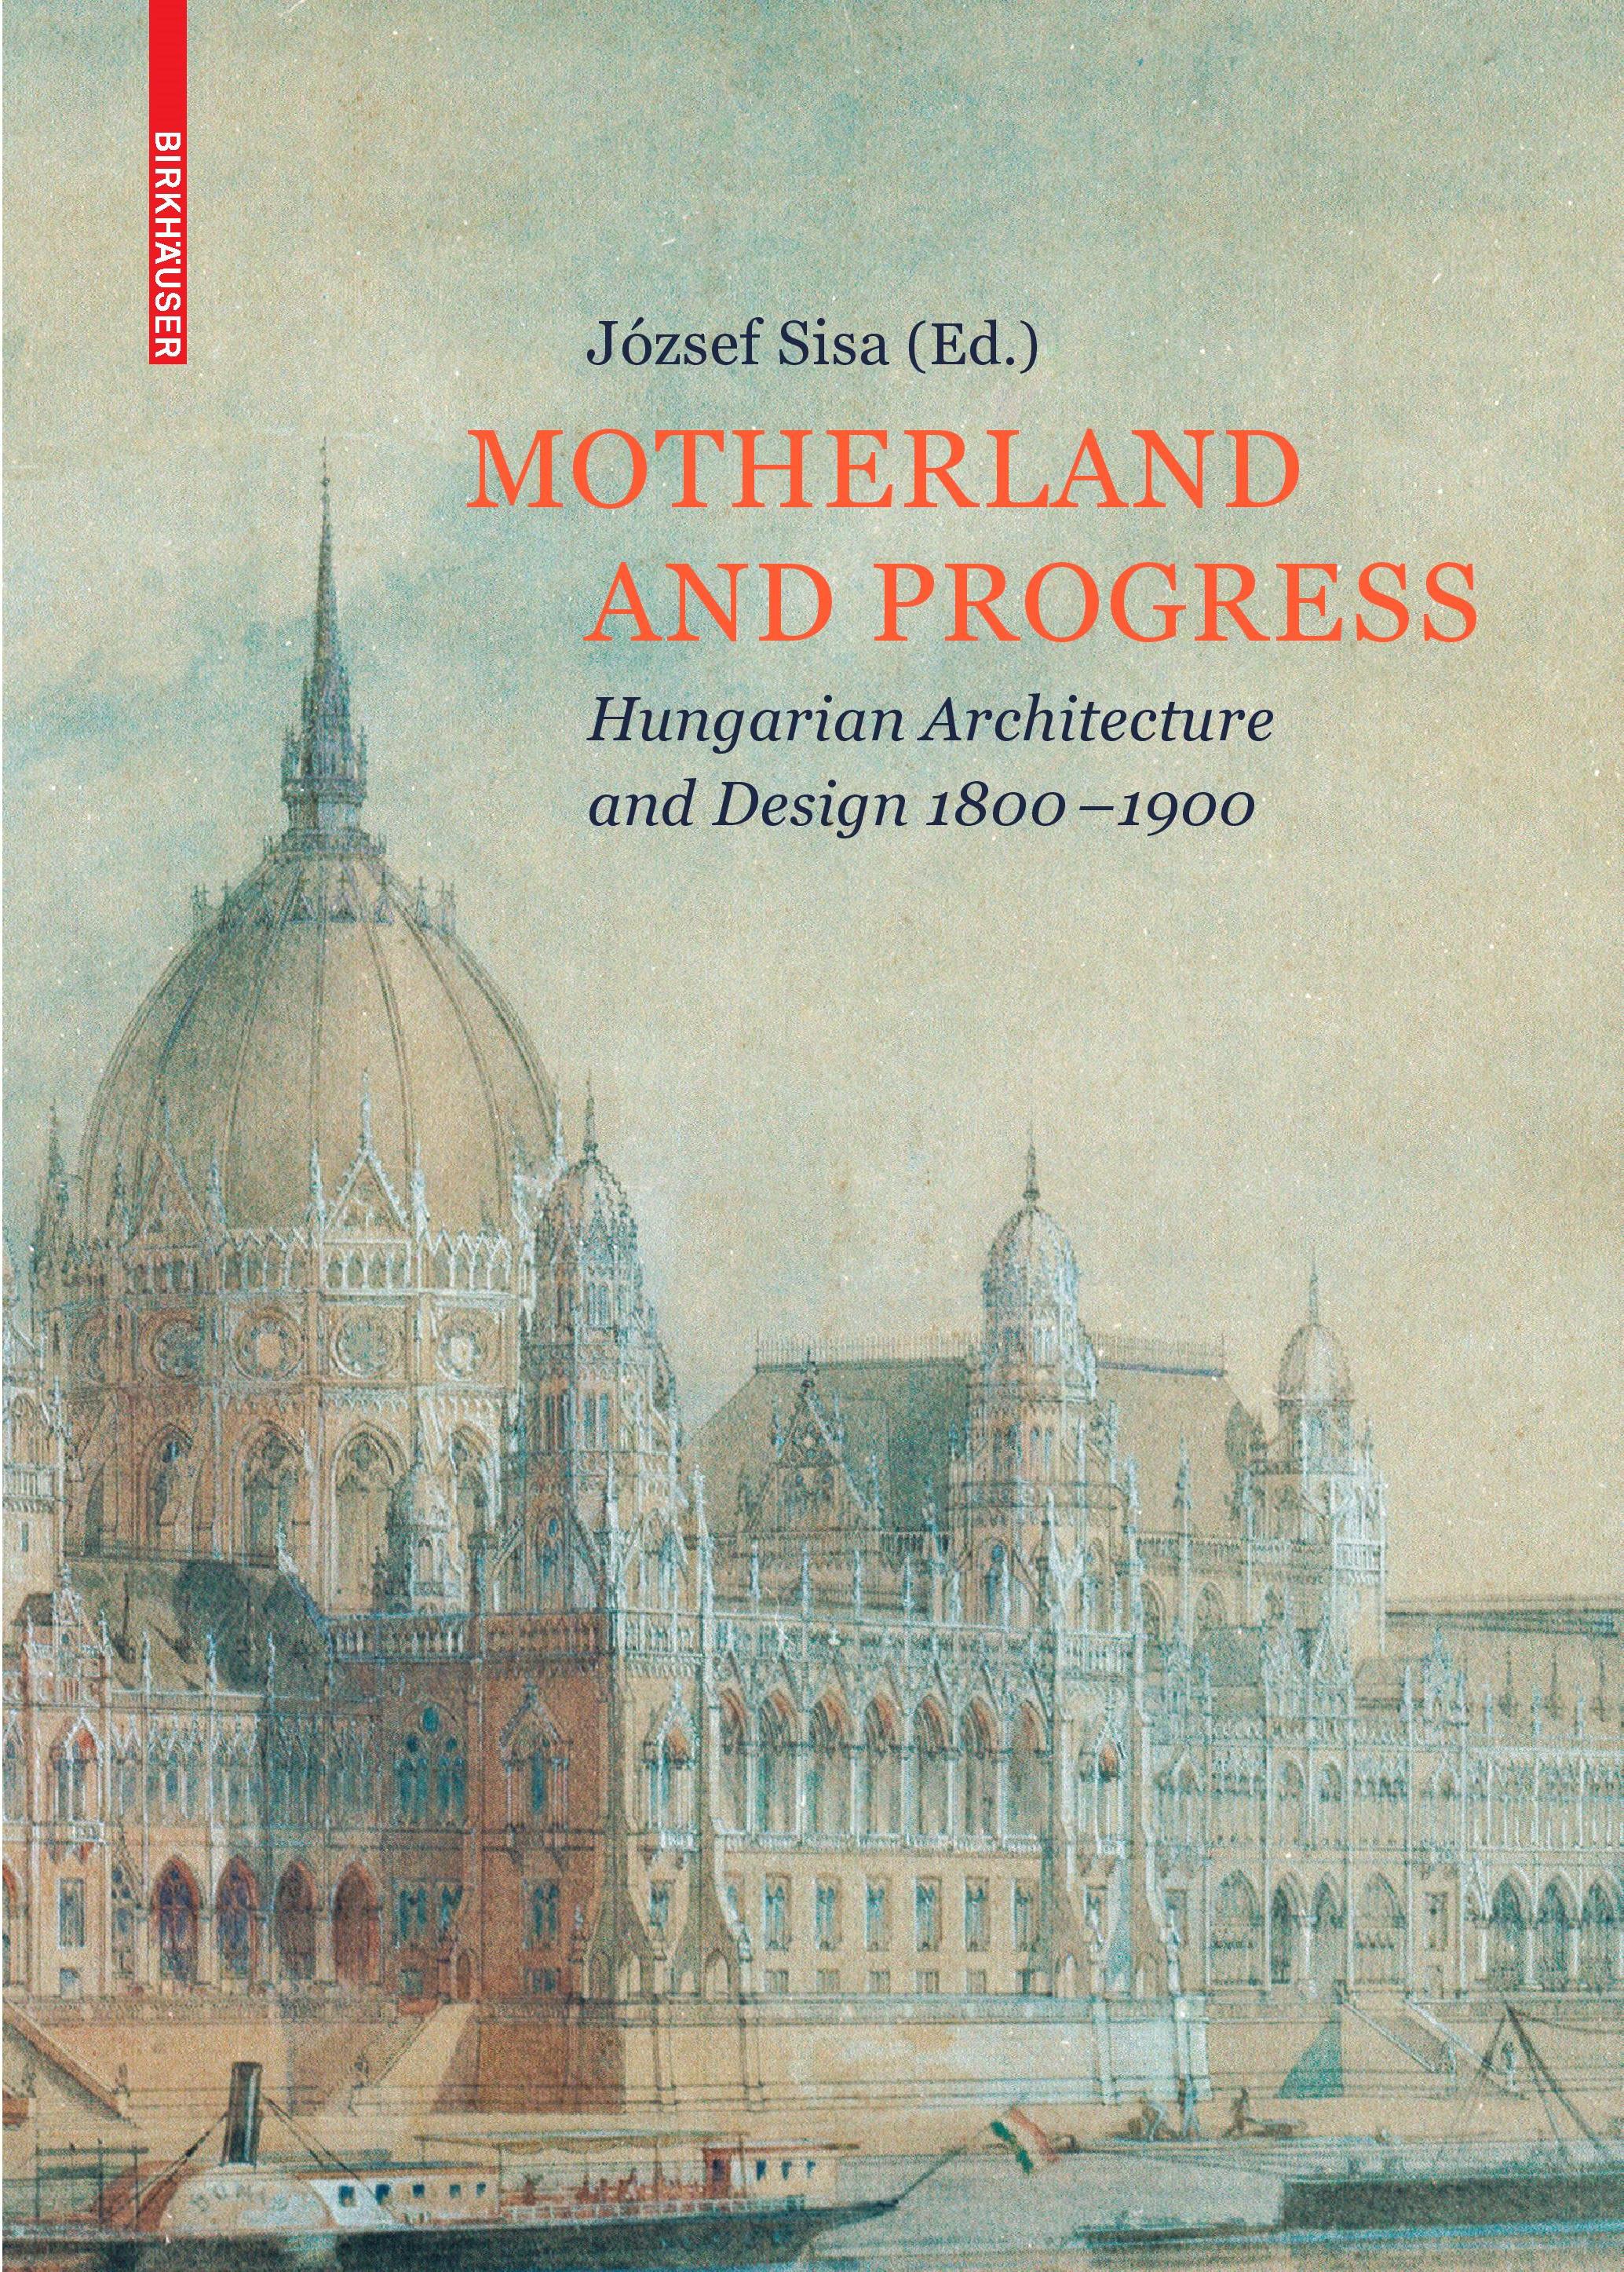 "Motherland and Progress" - Megjelent a 19. századi magyar építészet és iparművészet kézikönyve angolul